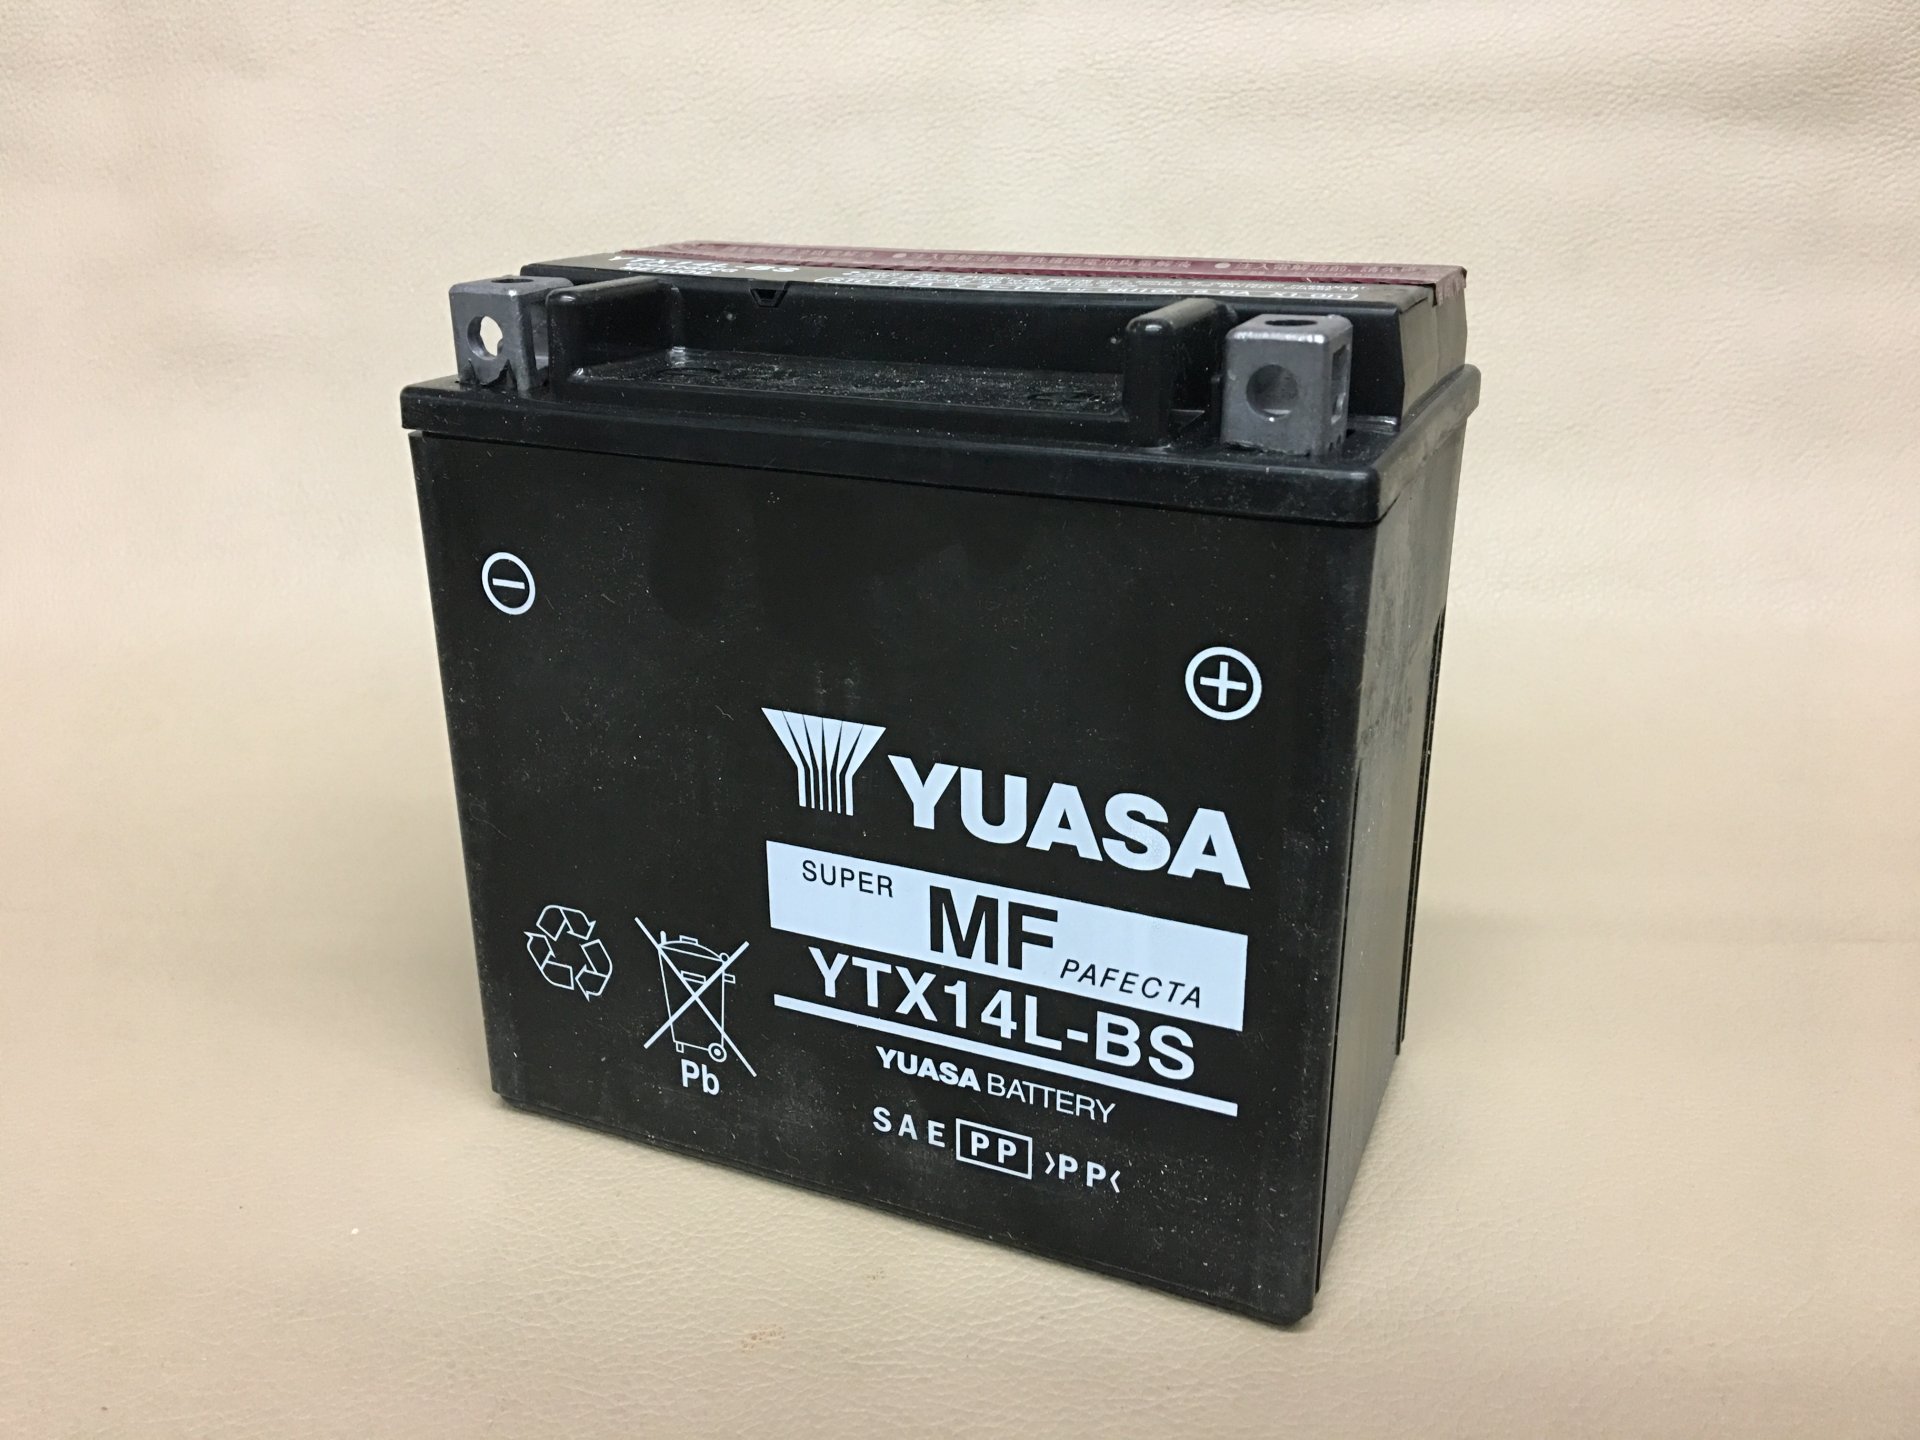 แบตเตอรี่ YUASA YTX14L-BS (Maintenance Free Type) 12V 12Ah